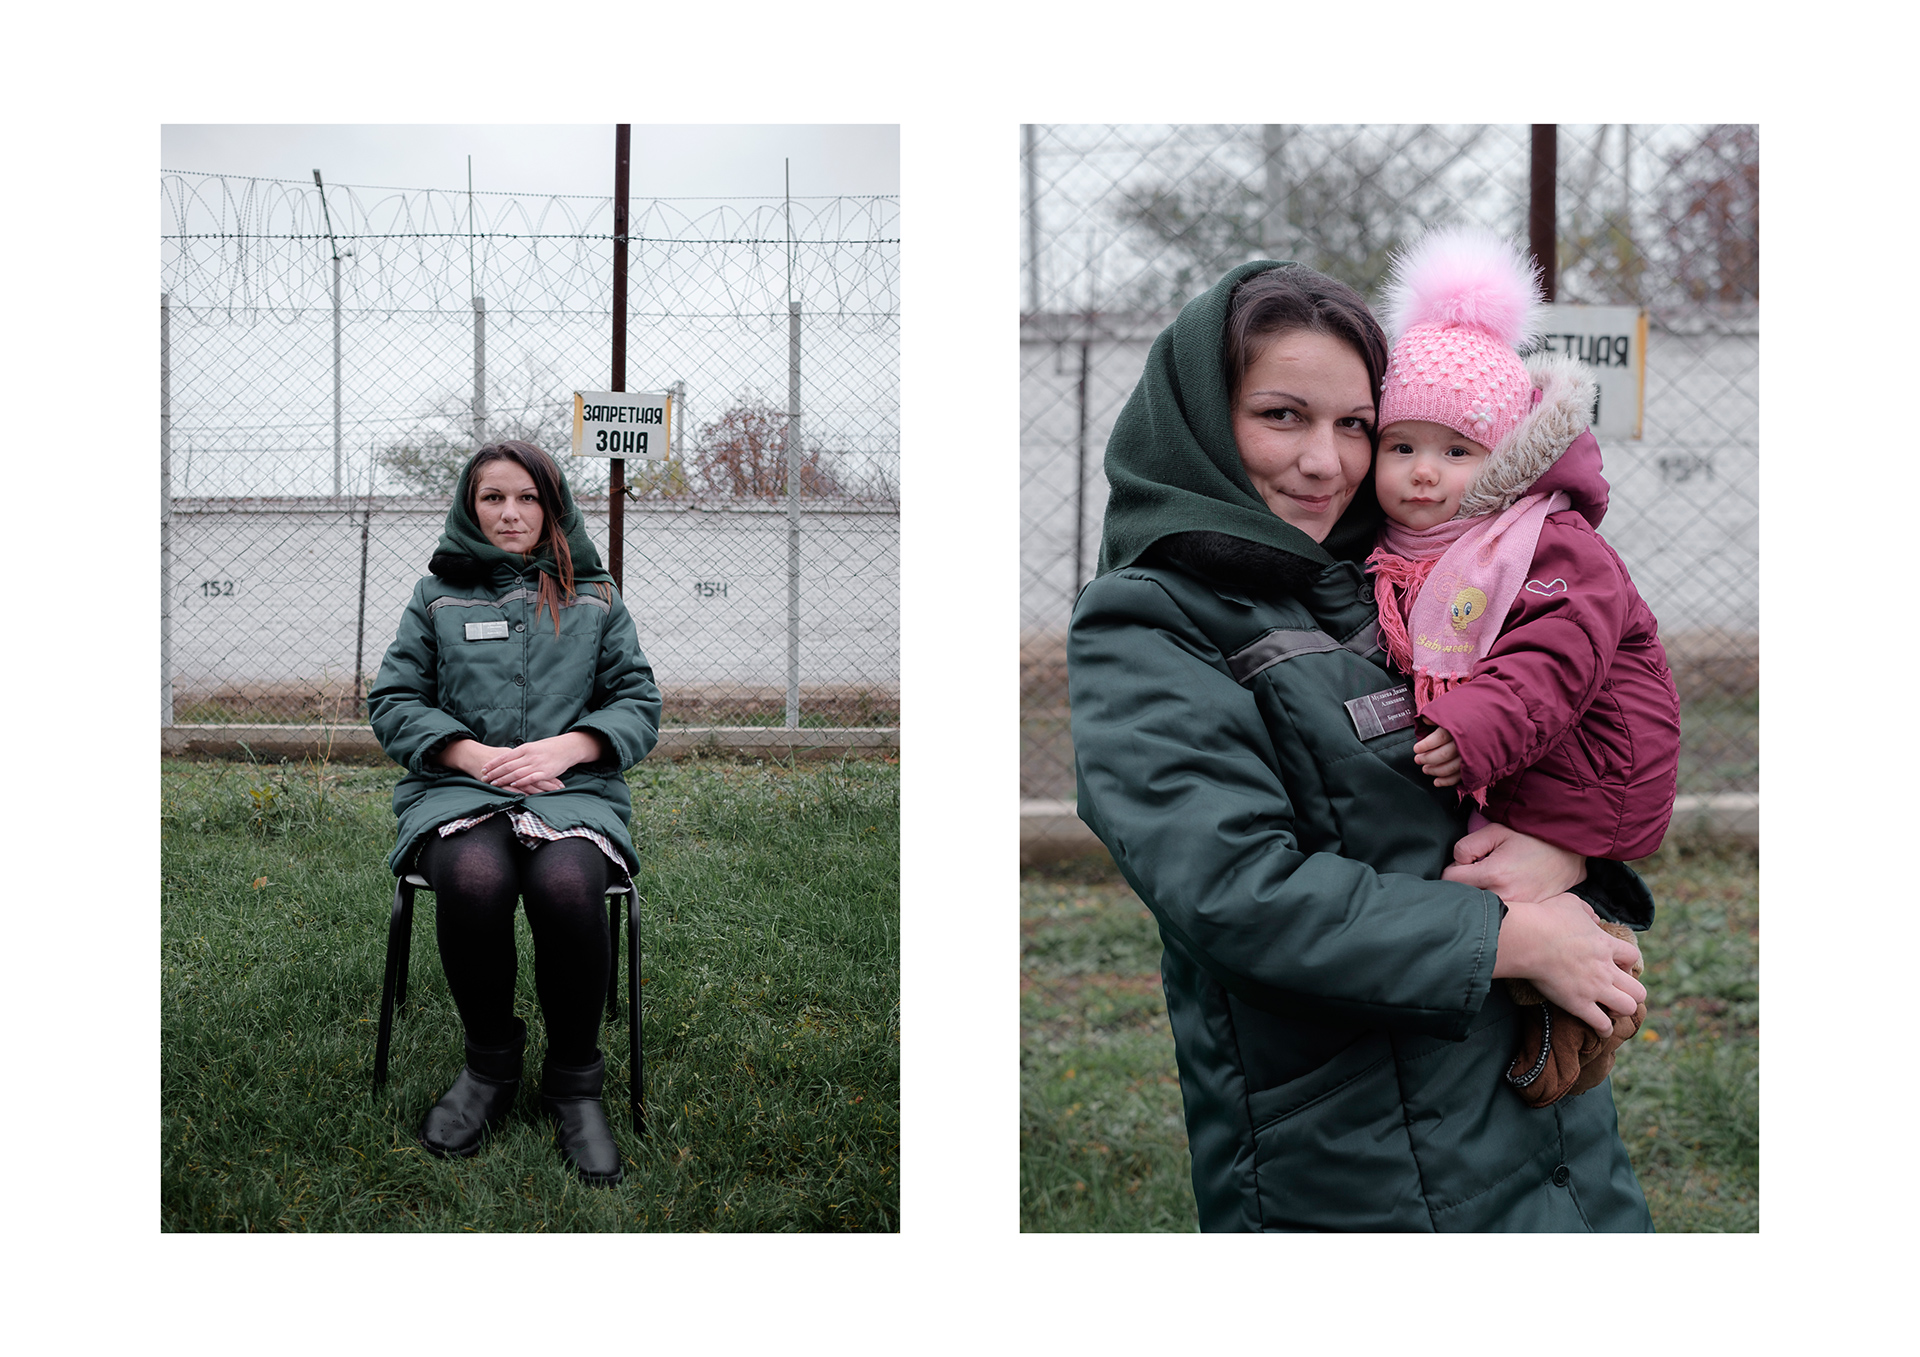 Про мать тюрьму. Осужденные женщины с детьми. Заключённые женщины с детьми. Женщины в местах лишения свободы. Осужденные беременные женщины.